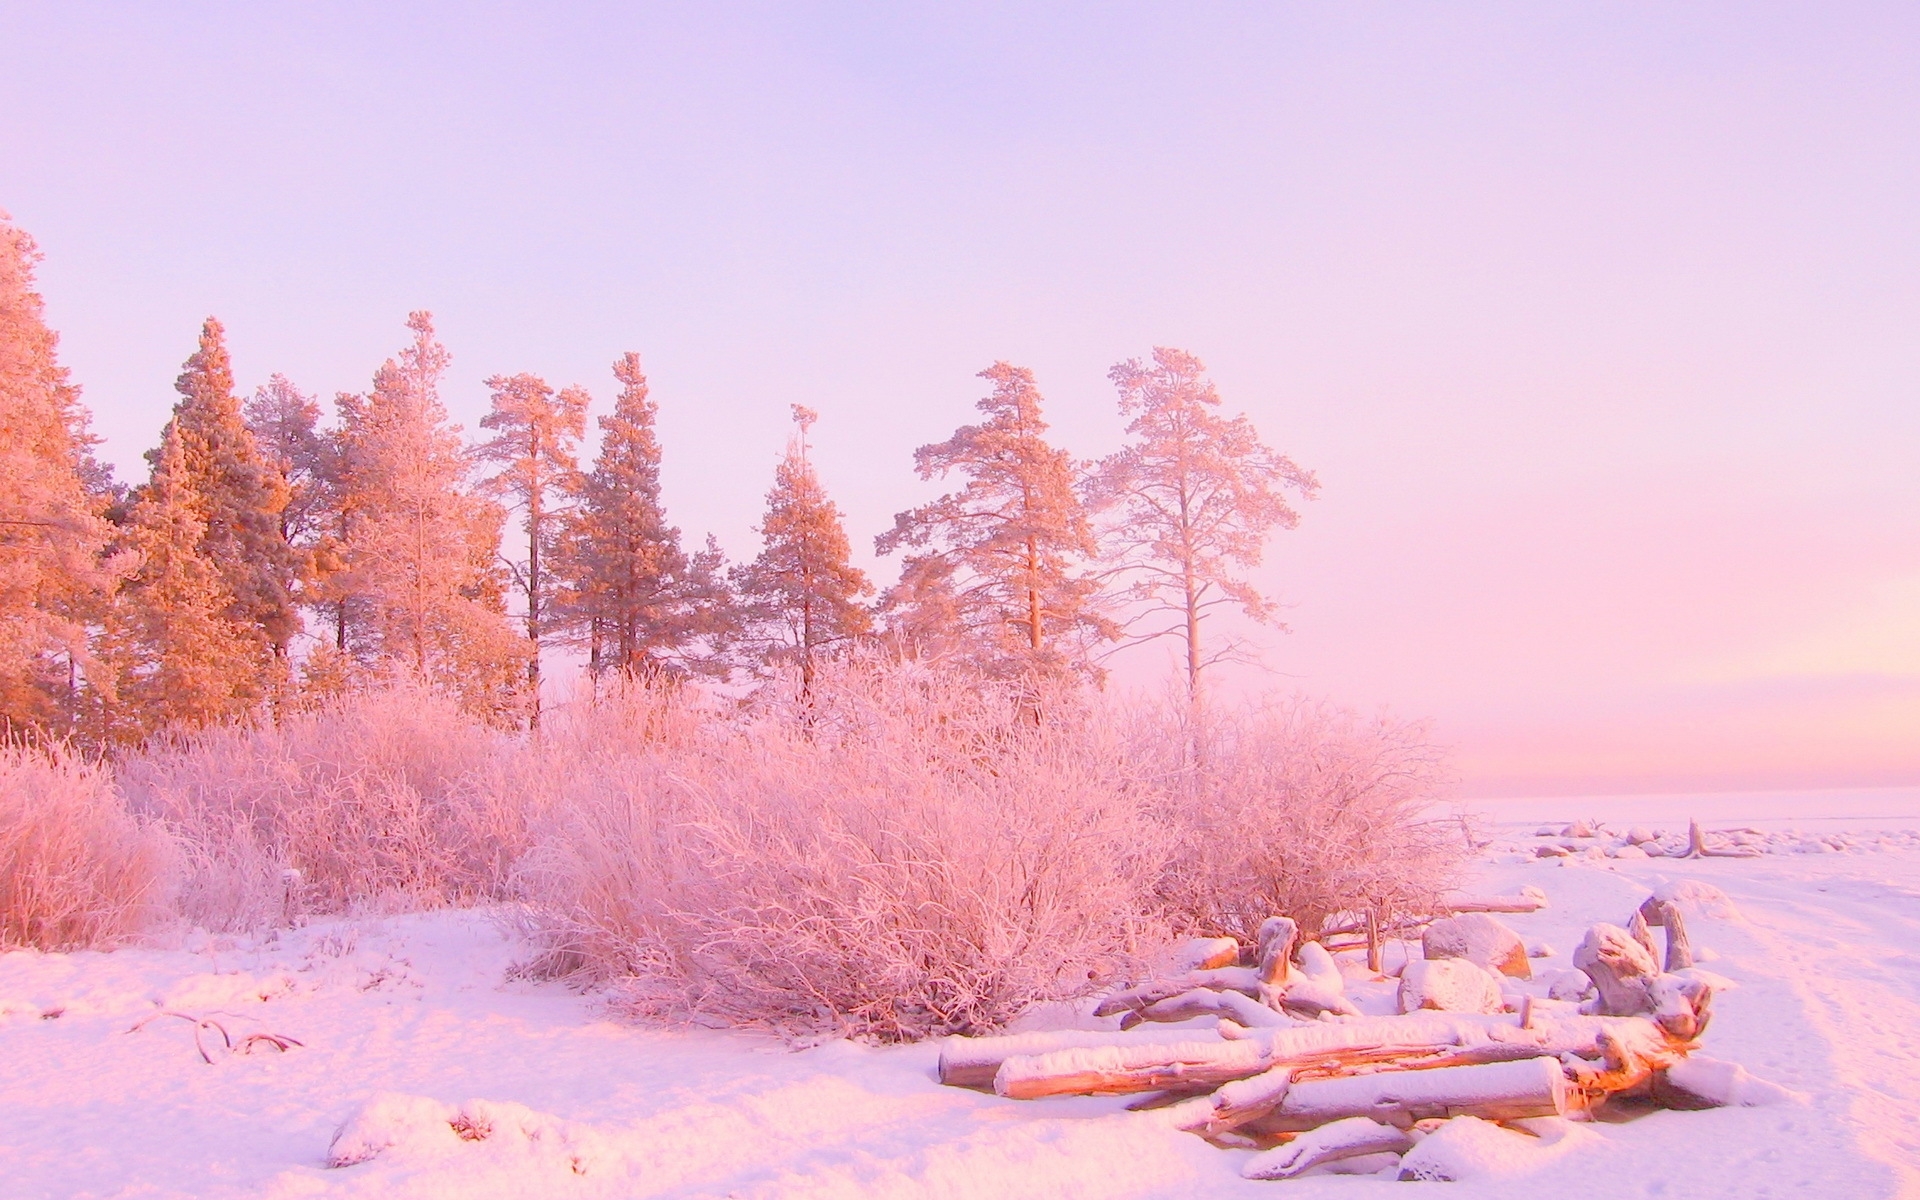 Картинки Зима, деревья, снежные заносы, бревна, в декабре, свет фото и обои на рабочий стол